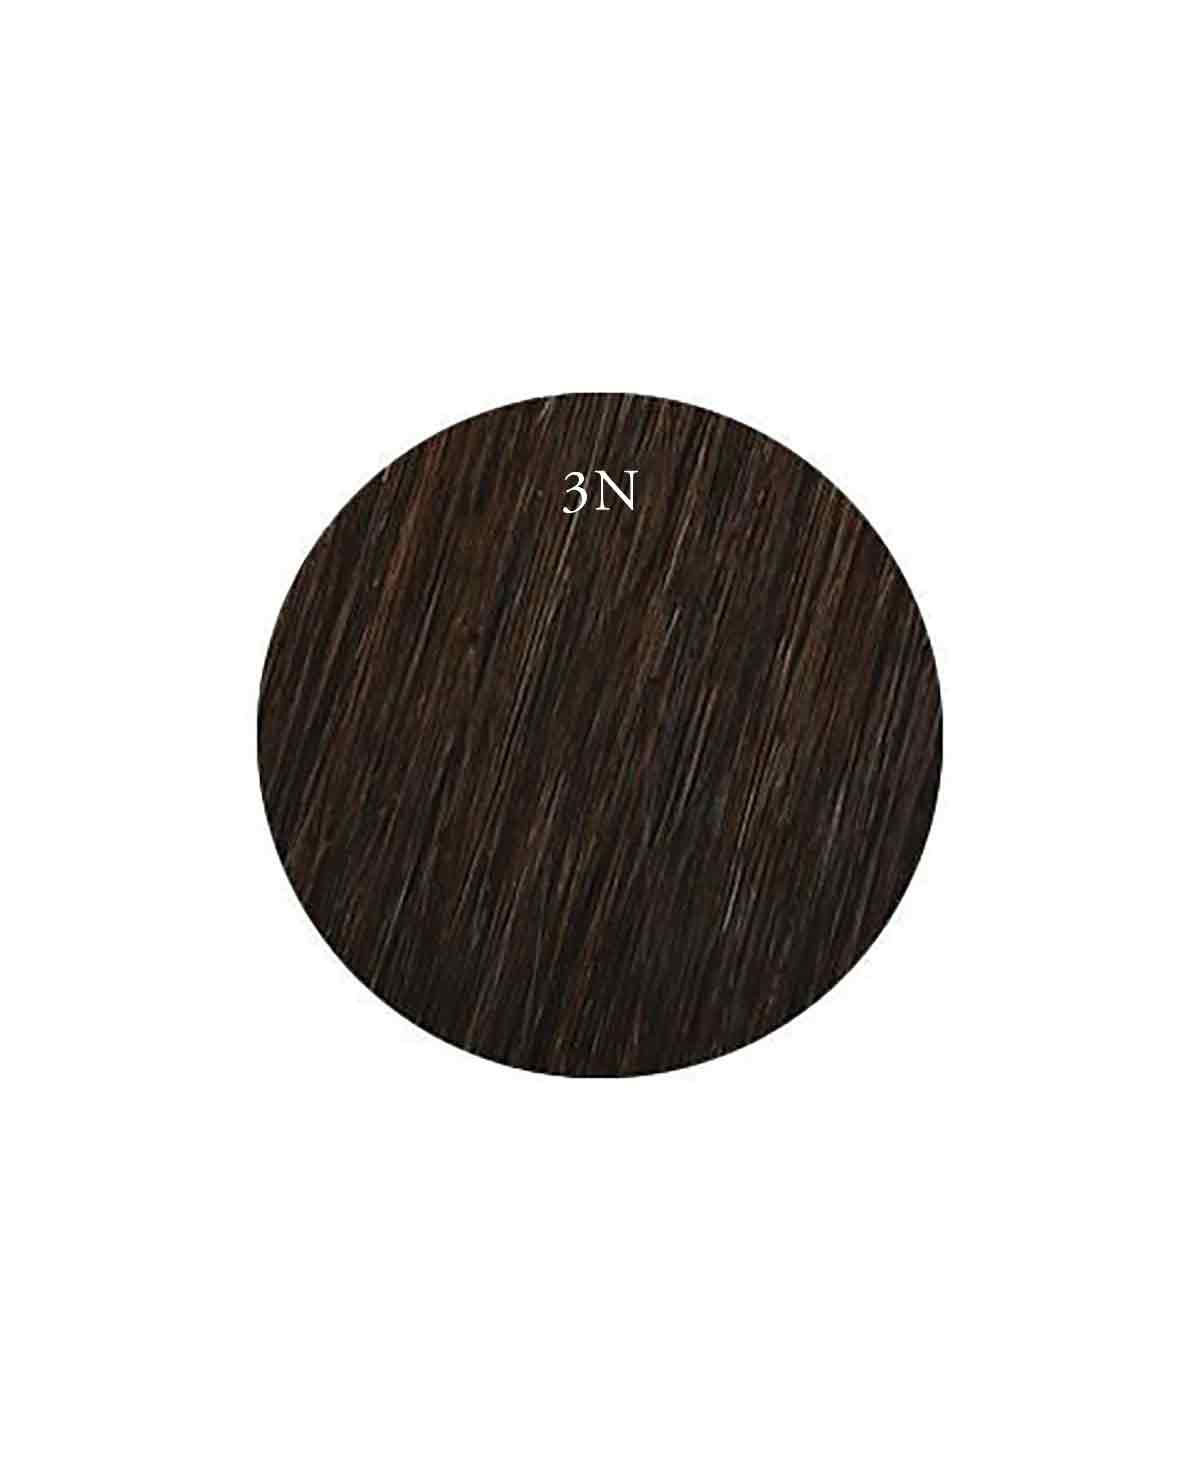 Showpony 55-60cm (24") Slim Tape Extensions - Black Brown - 3N